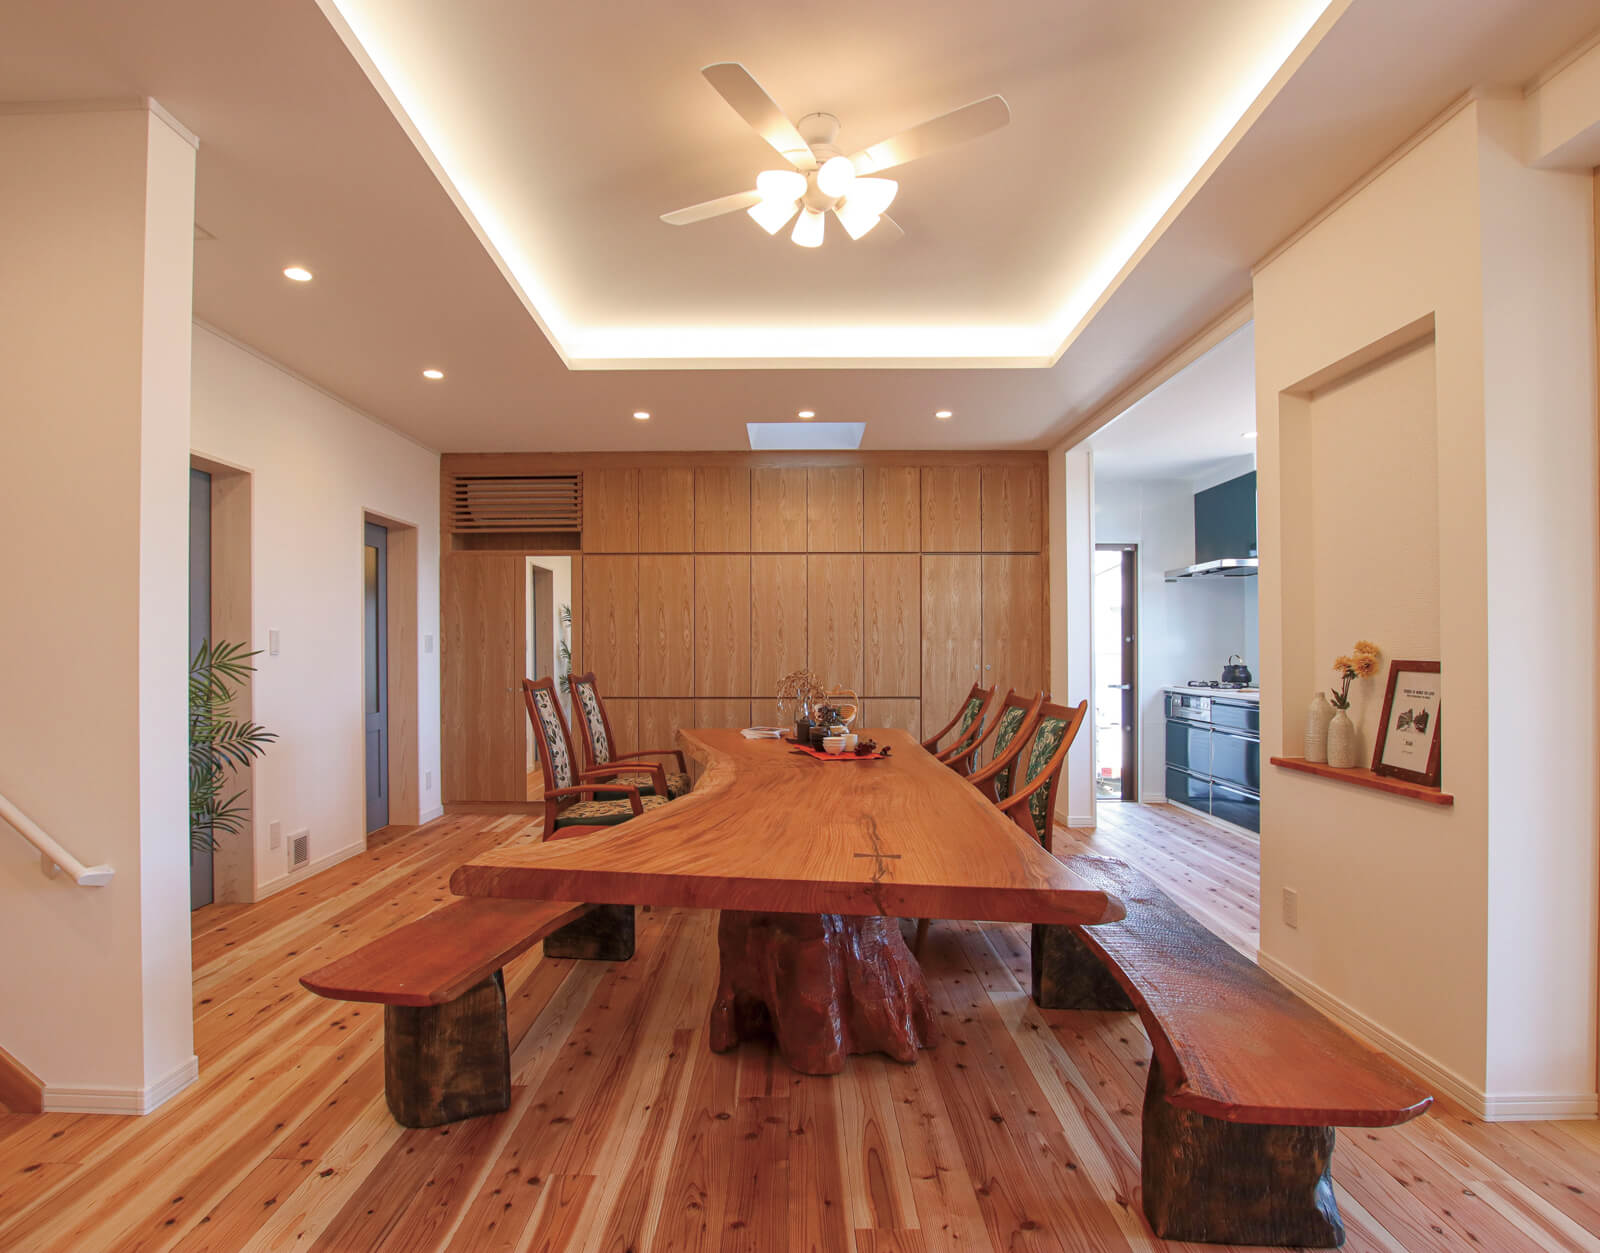 Kさん宅の設計の起点となった長さ4ｍほどもあるケヤキの大テーブルが、空間に華やかさを添える